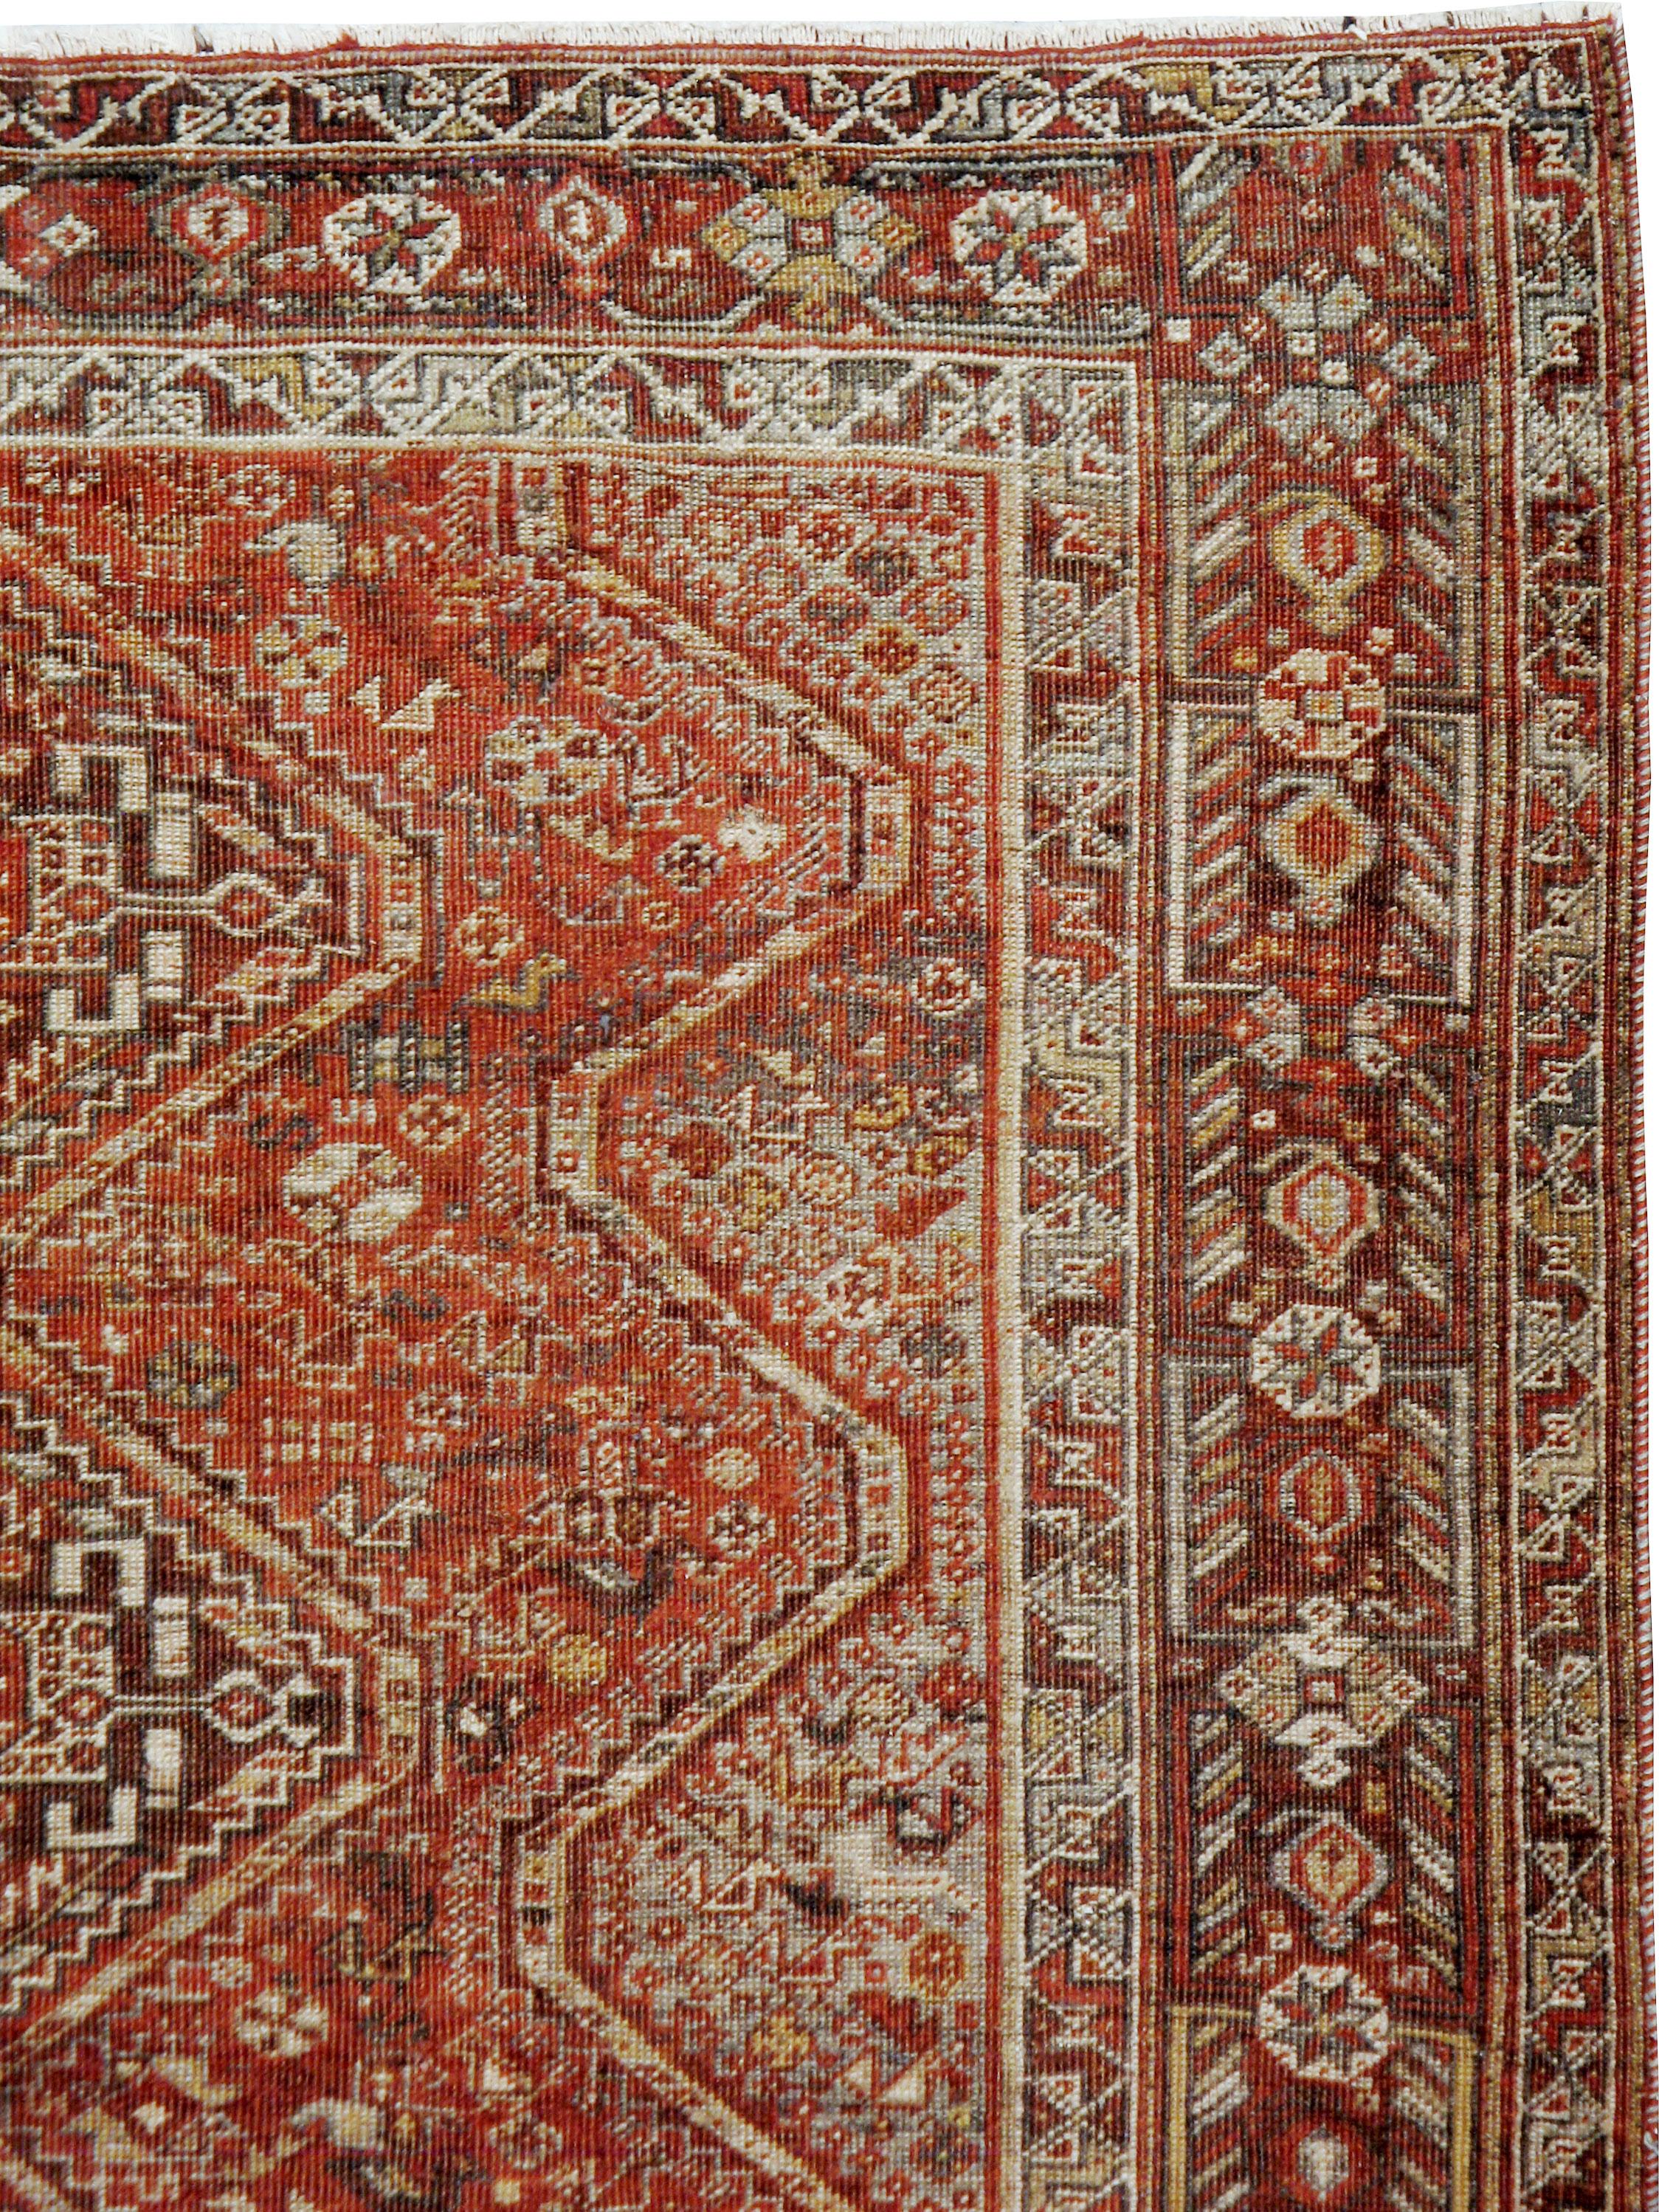 Un ancien tapis persan Shiraz du début du 20e siècle.

Mesures : 5' 5